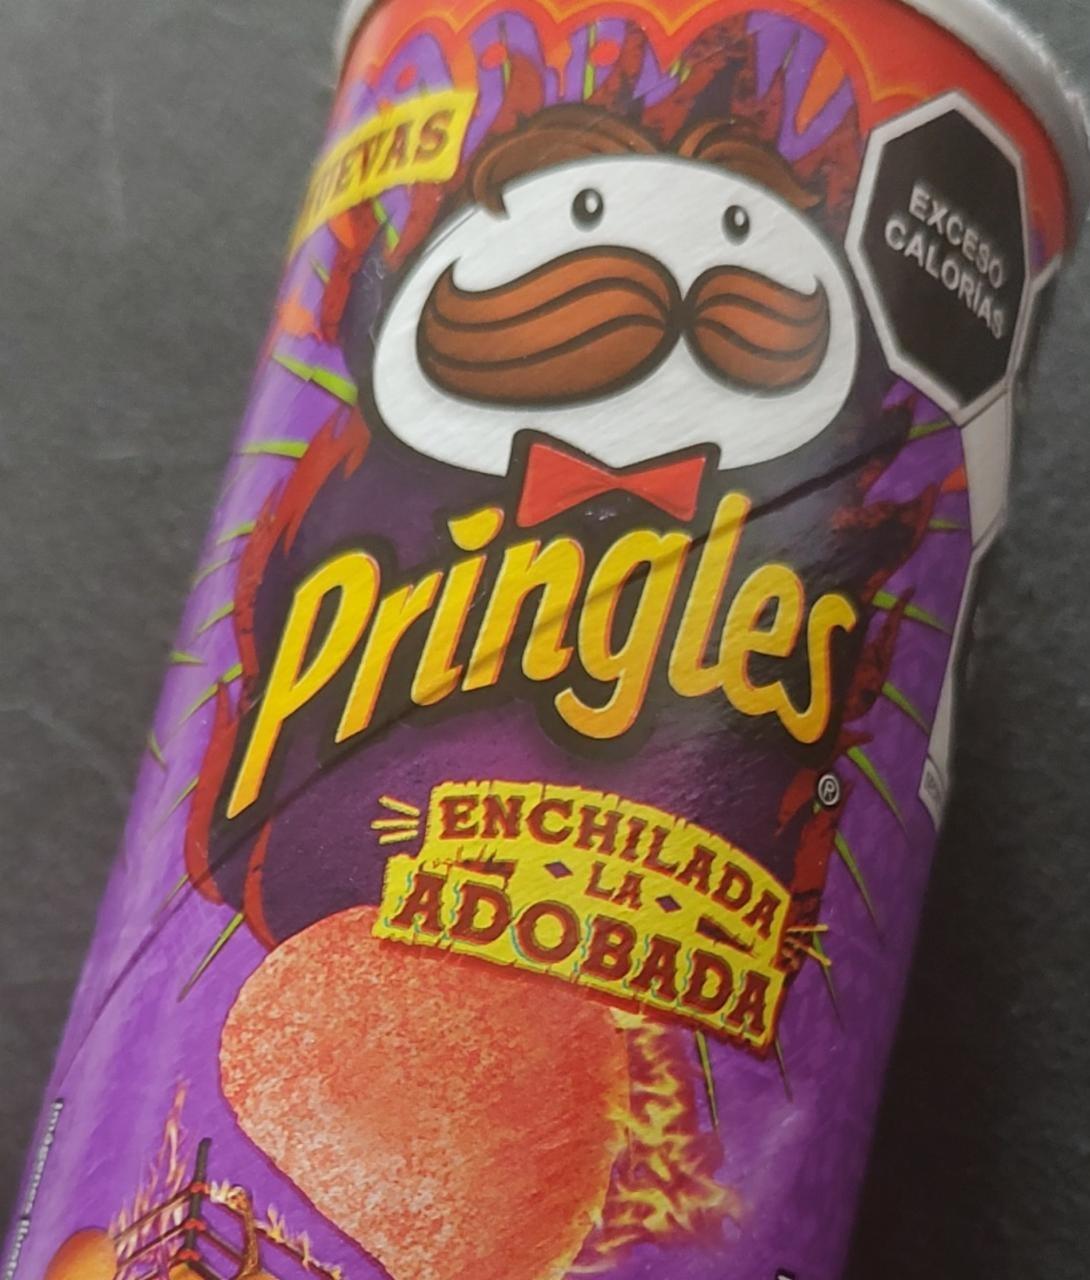 Fotografie - Pringles Enchilada la adobada